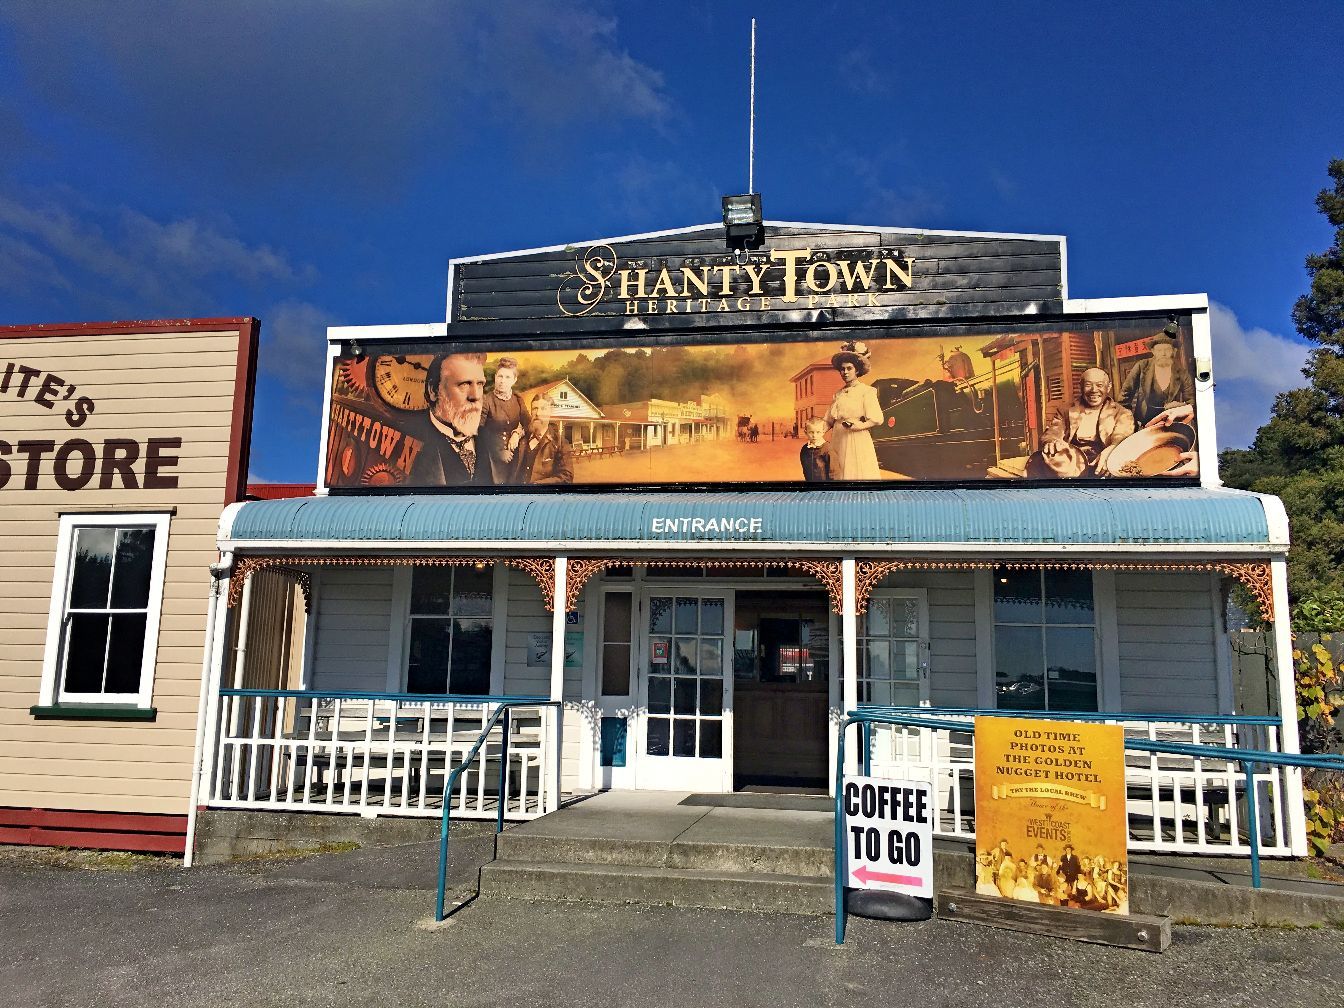 仙蒂镇，位于新西兰南岛西海岸最大城市格雷茅斯以南10公里，新西兰重要文化遗产景点，再现了建于 20 